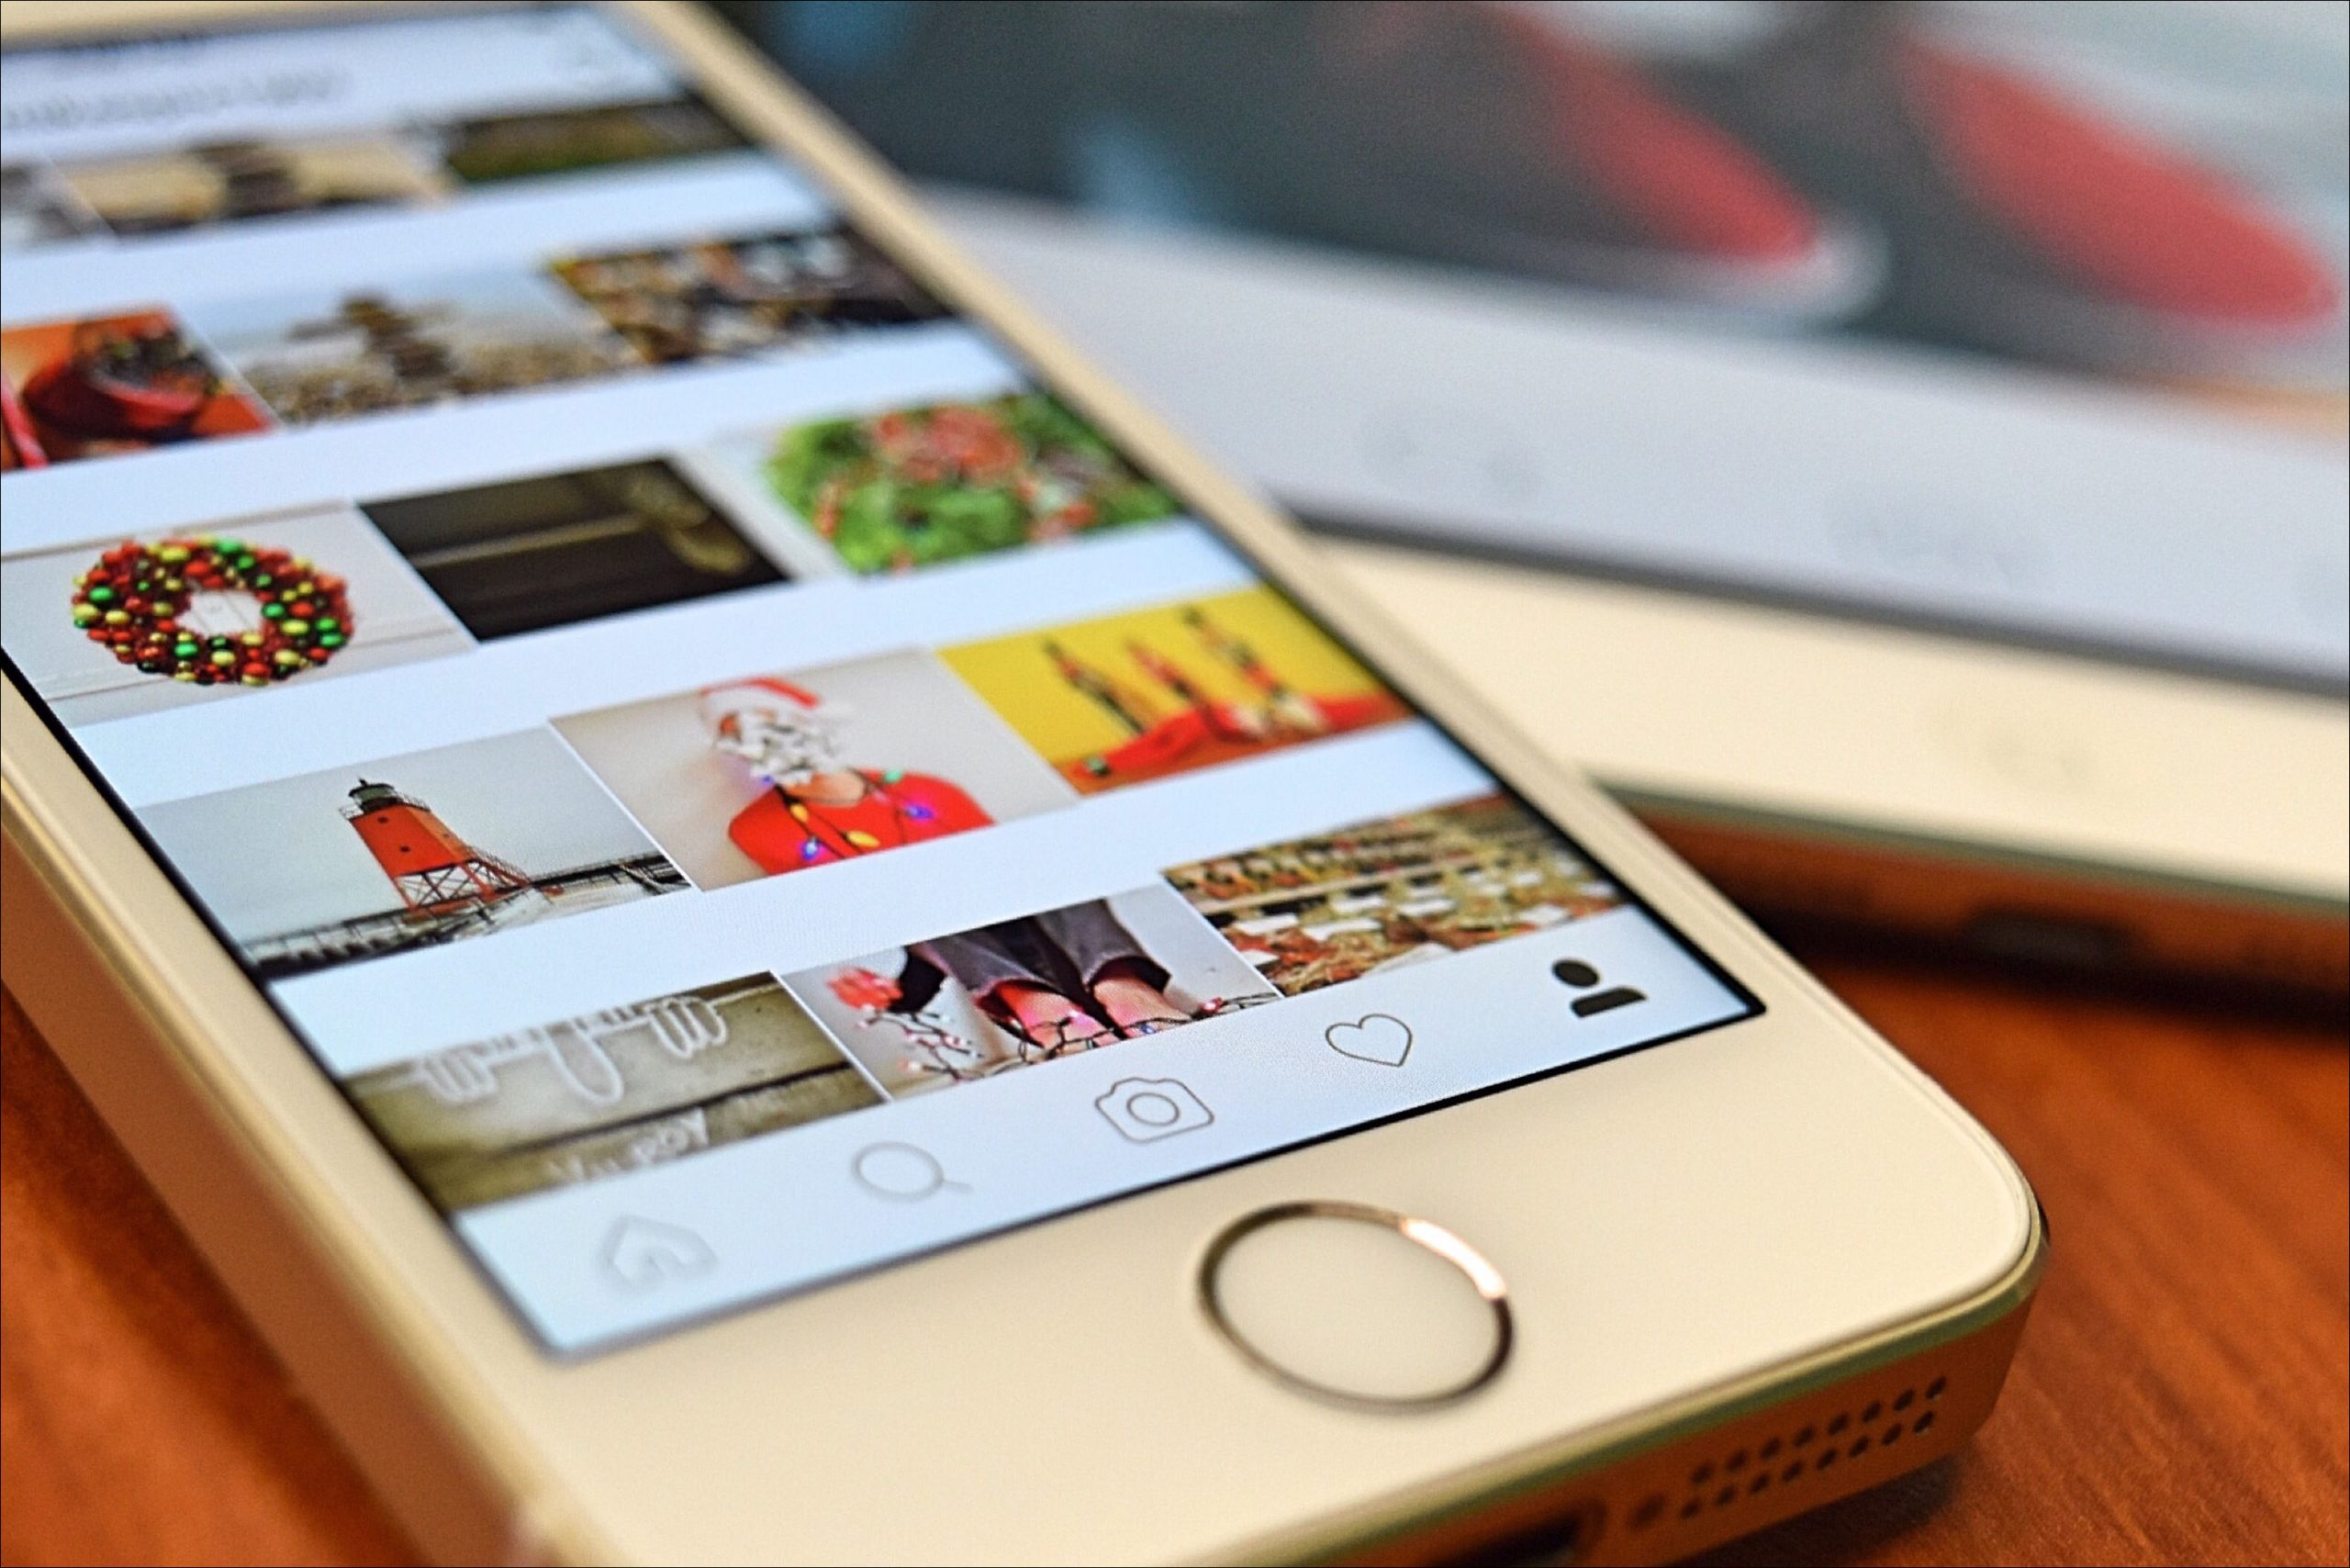 انسٹاگرام سے اپنی تمام تصاویر ڈاؤن لوڈ کرنے کا طریقہ